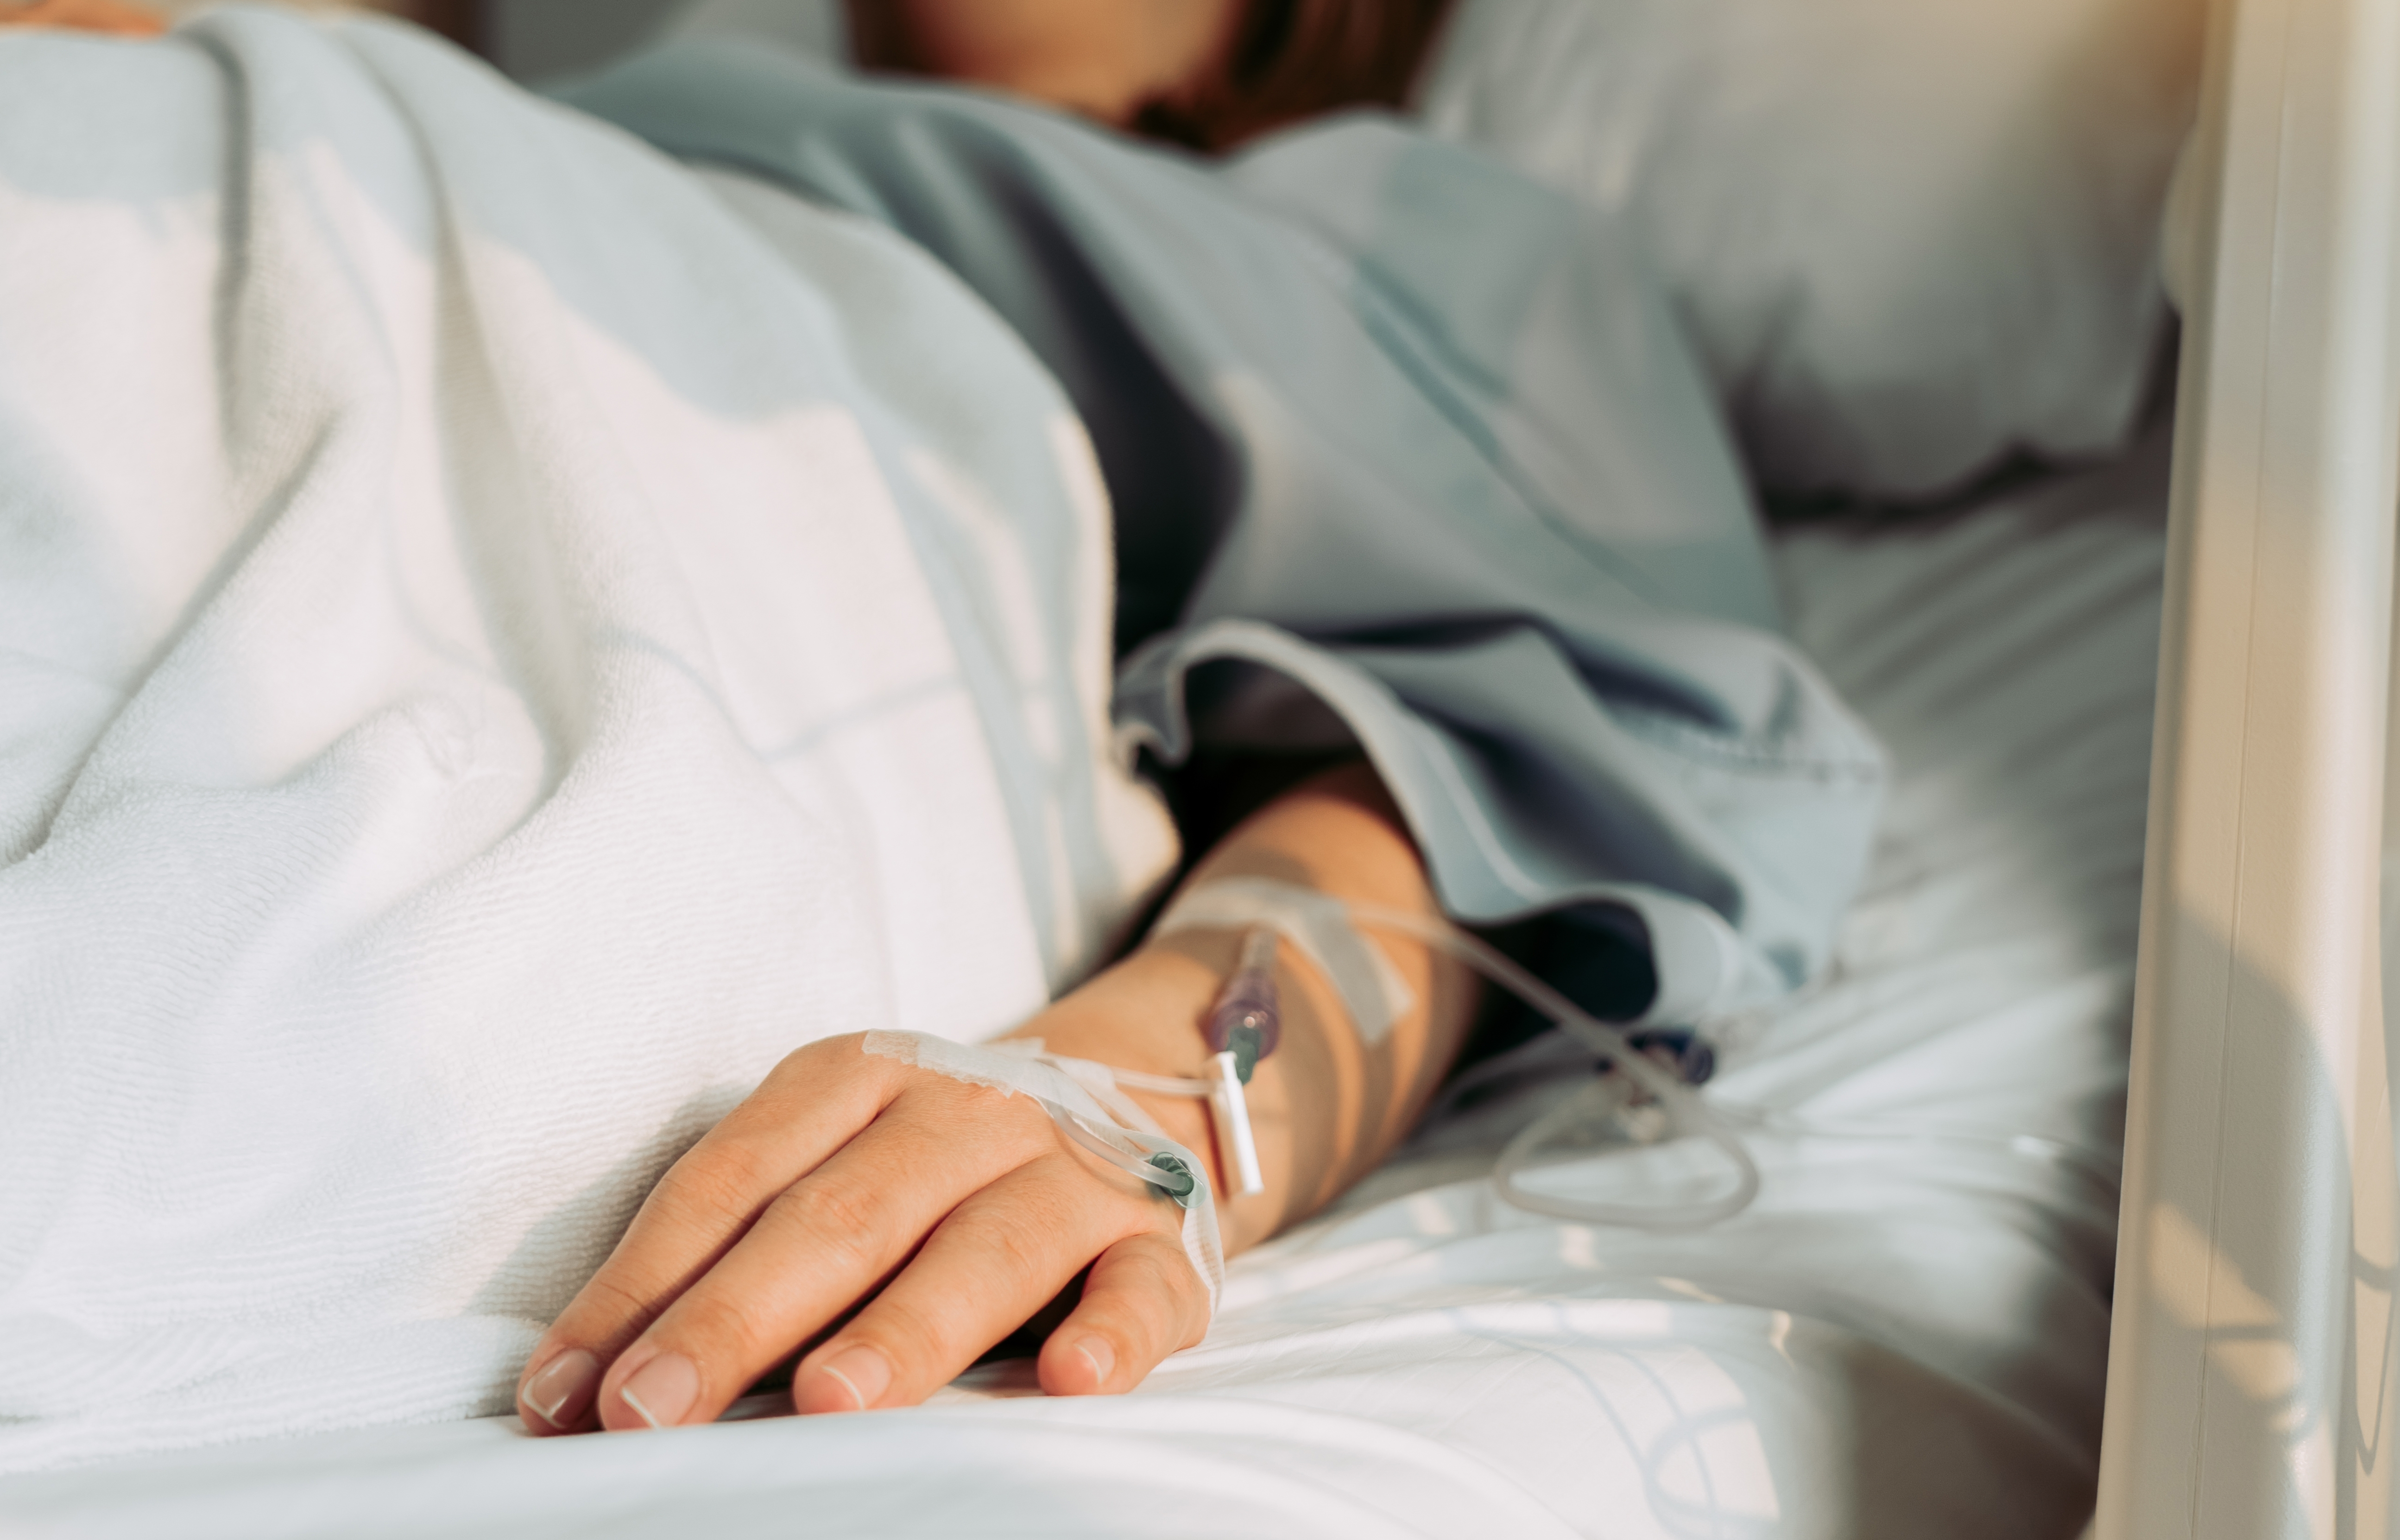 Mujer tumbada y enferma en el hospital | Fuente: Shutterstock